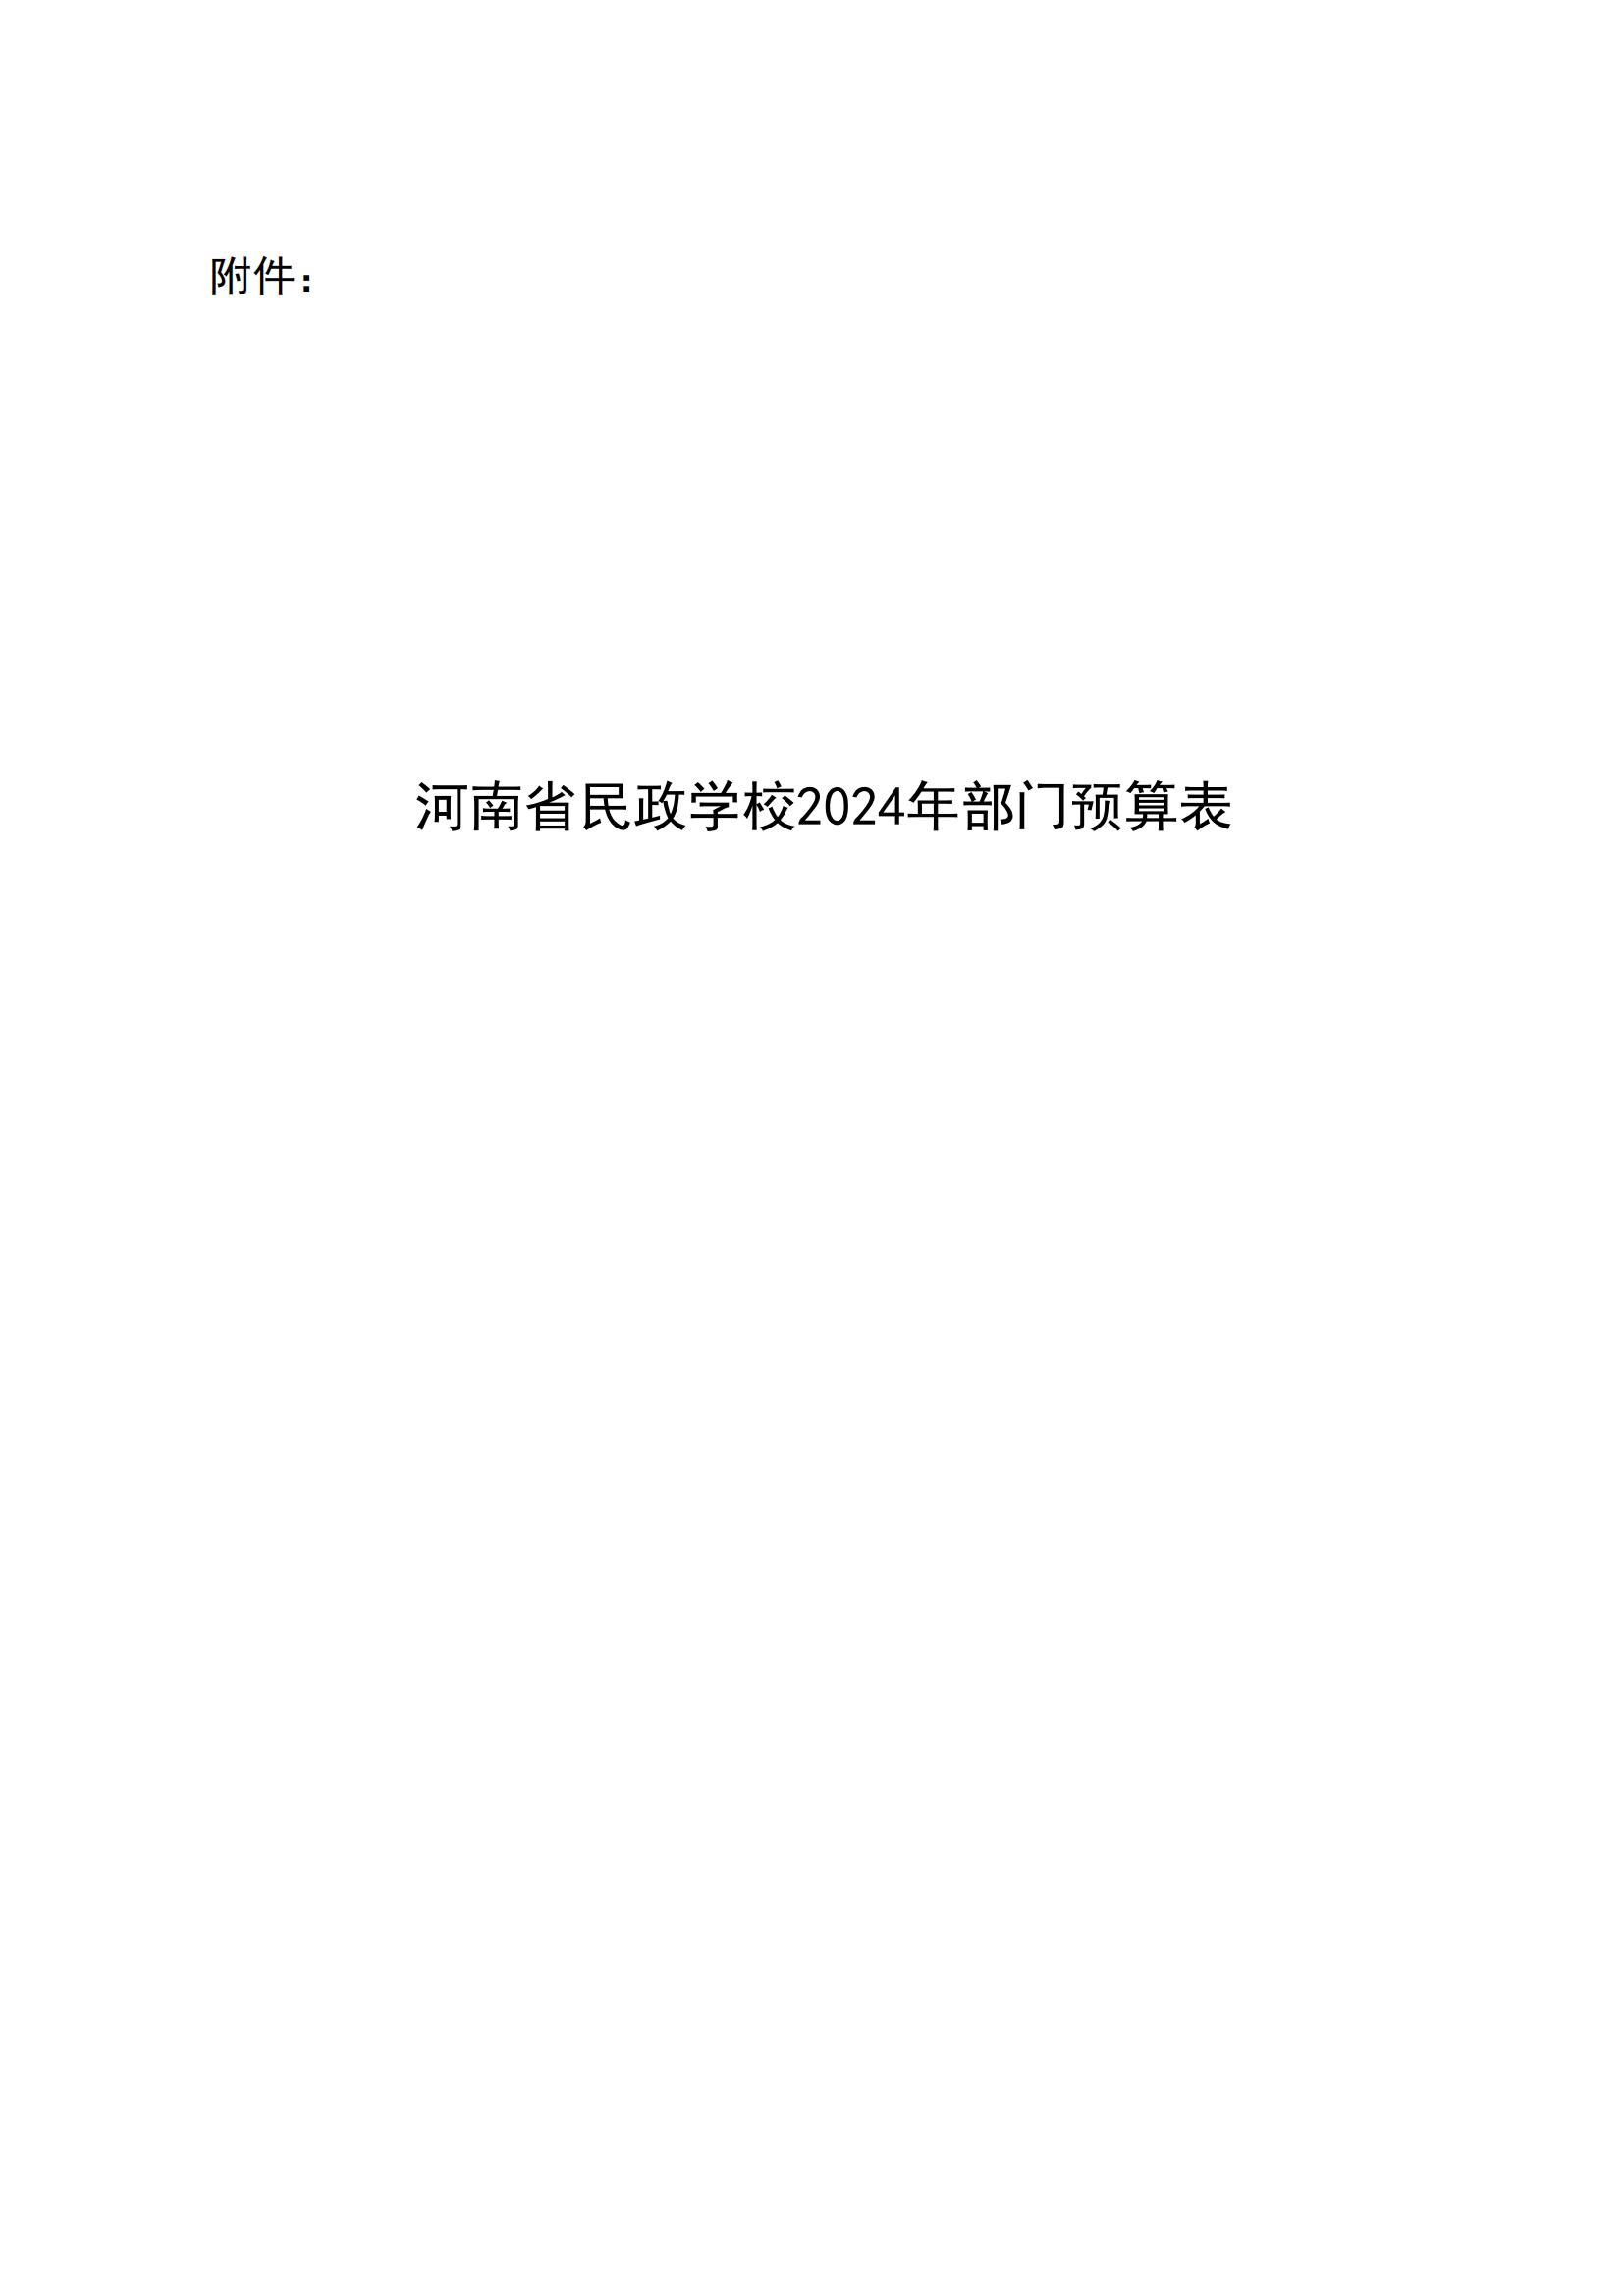 河南省民政学校2024年部门预算公开(1)_07.jpg